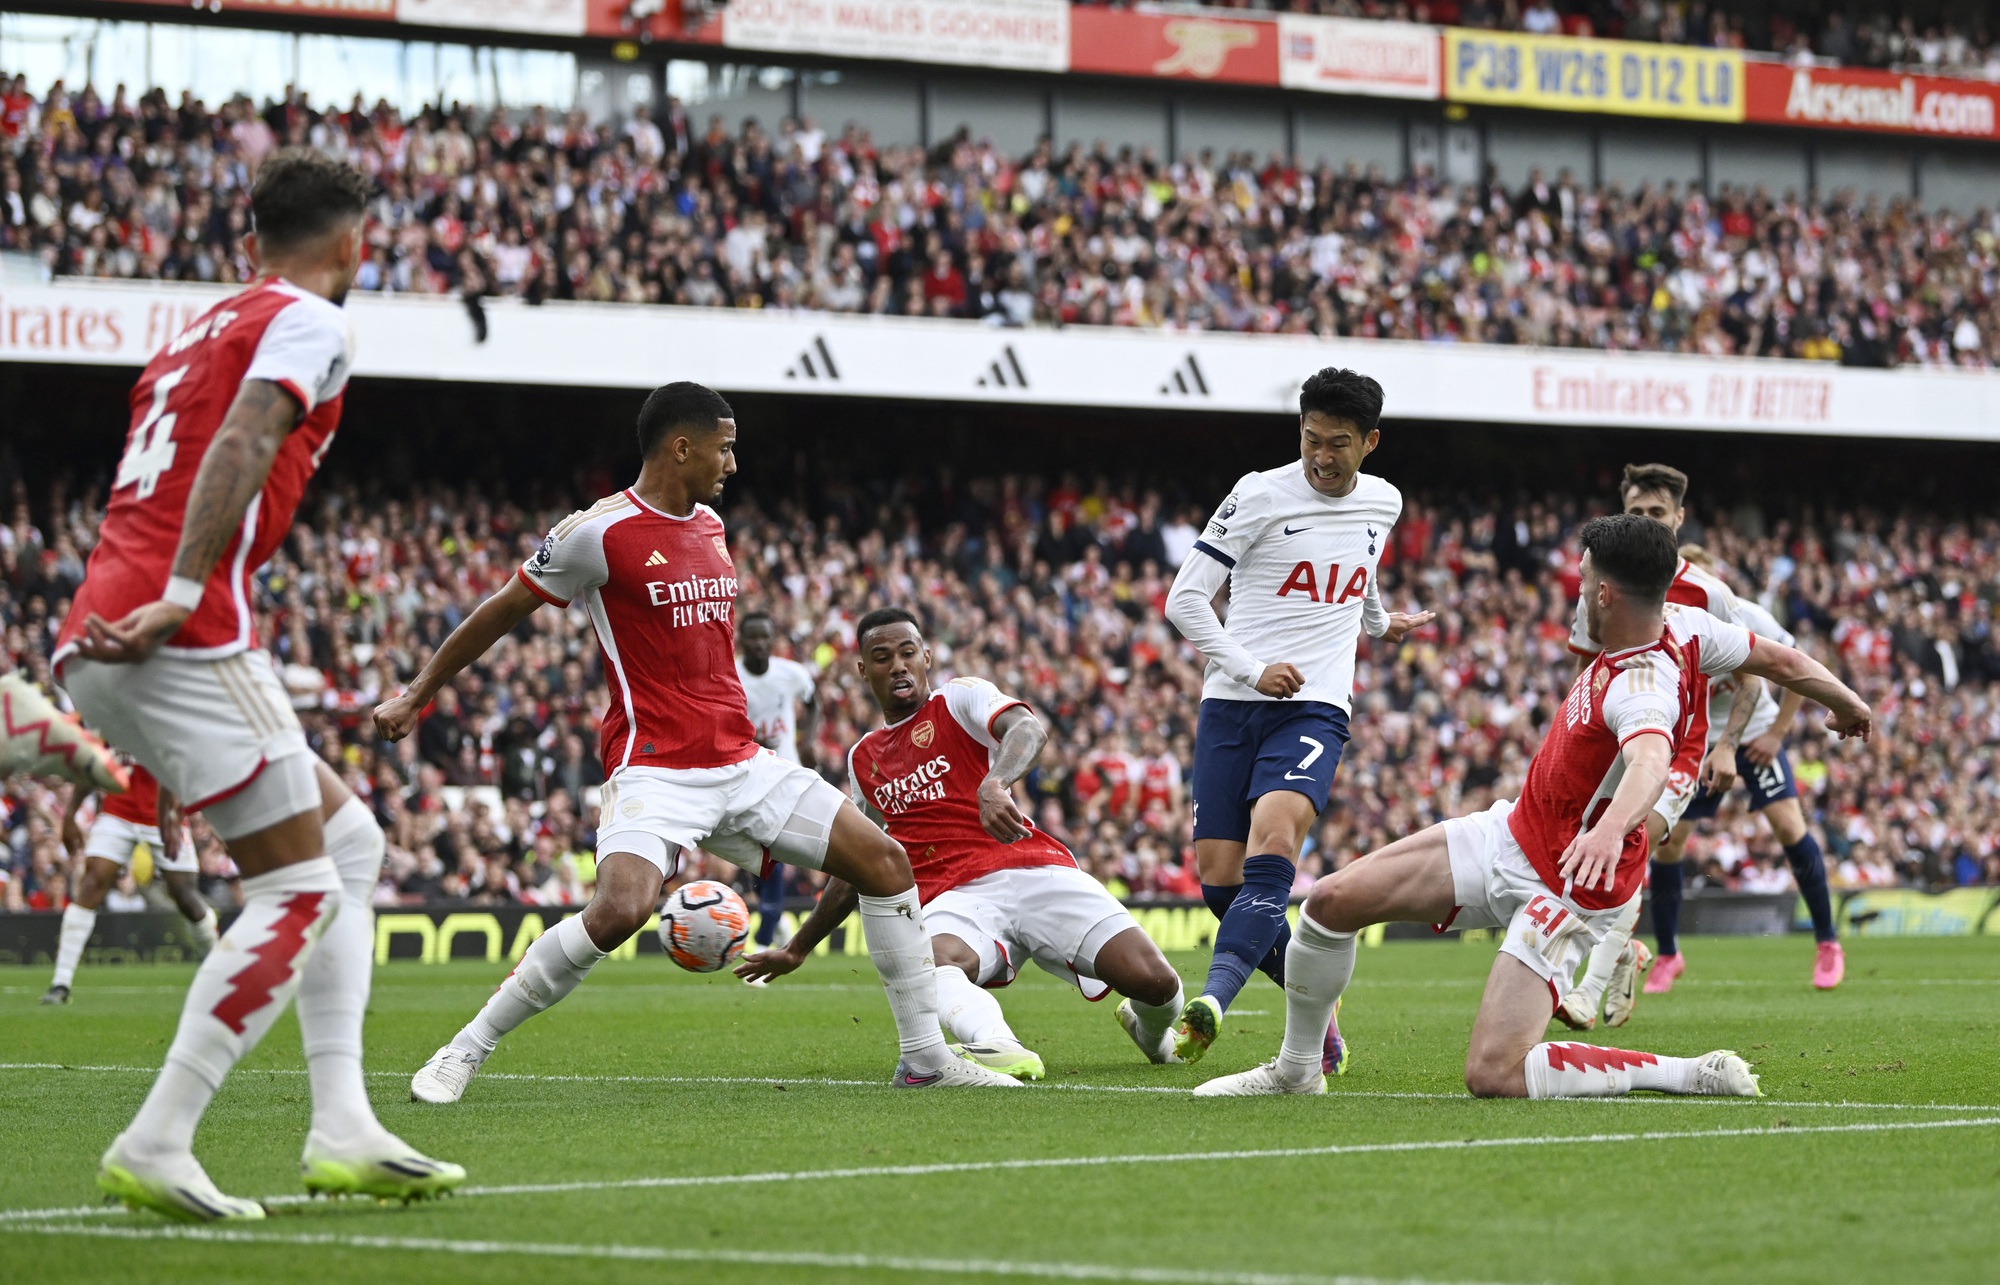 Rượt đuổi kịch tính, Tottenham cầm chân Arsenal  - Ảnh 3.